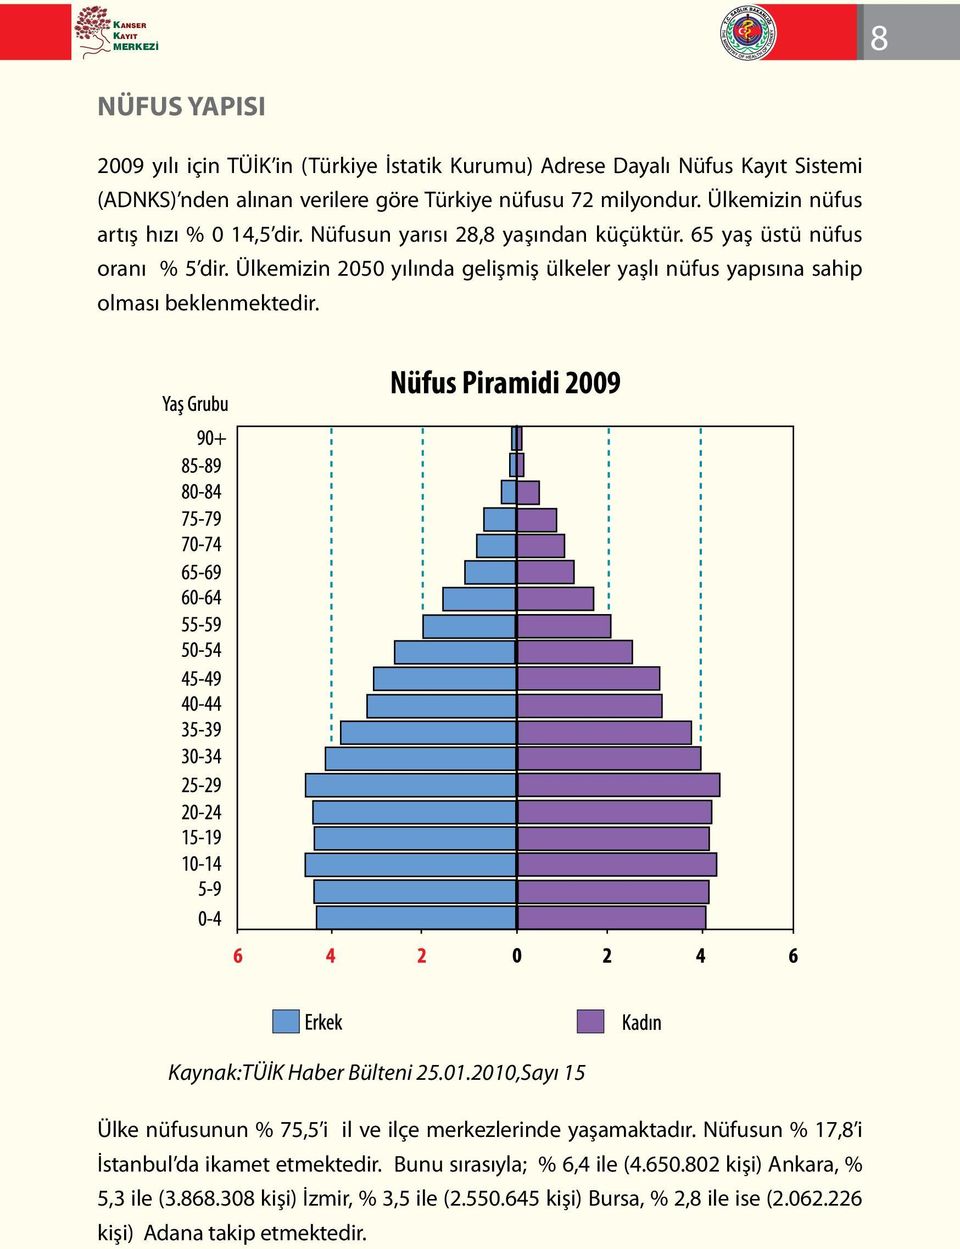 Ülkemizin 2050 yılında gelişmiş ülkeler yaşlı nüfus yapısına sahip olması beklenmektedir. Nüfus Piramidi 2009 Kaynak:TÜİK Haber Bülteni 25.01.